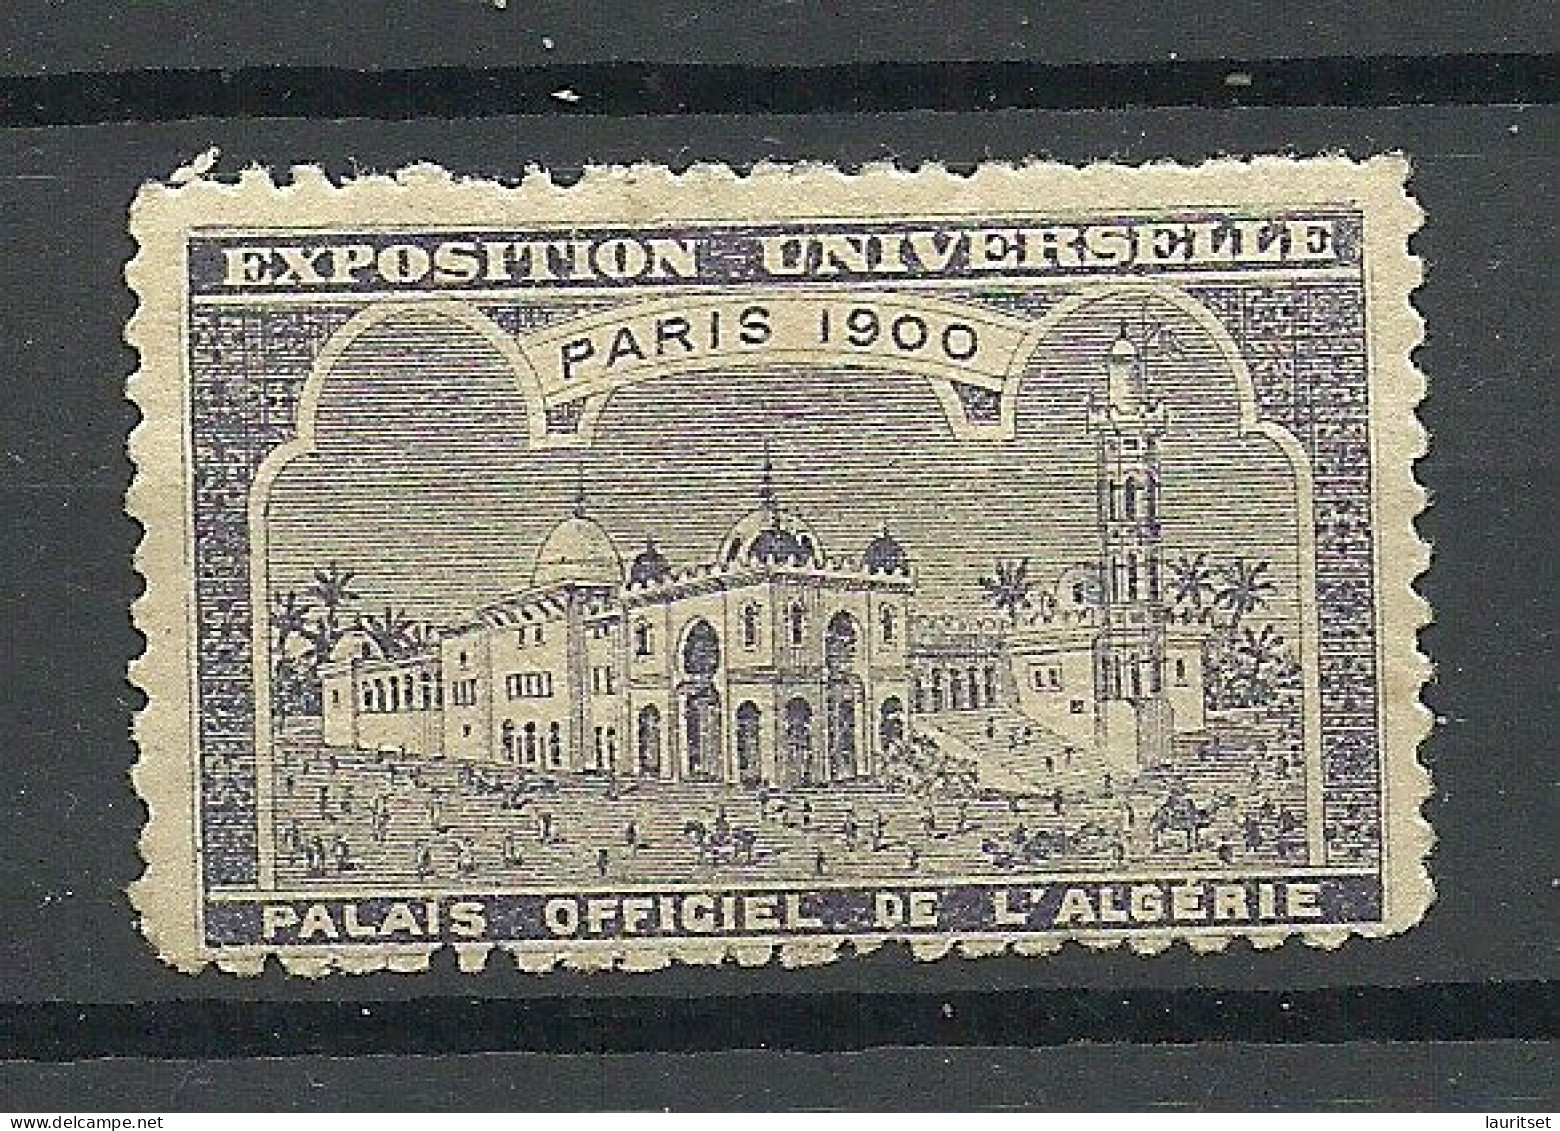 France 1900 EXPOSITION UNIVERSELLE Paris Algeria L`Algerie * - 1900 – Pariis (France)